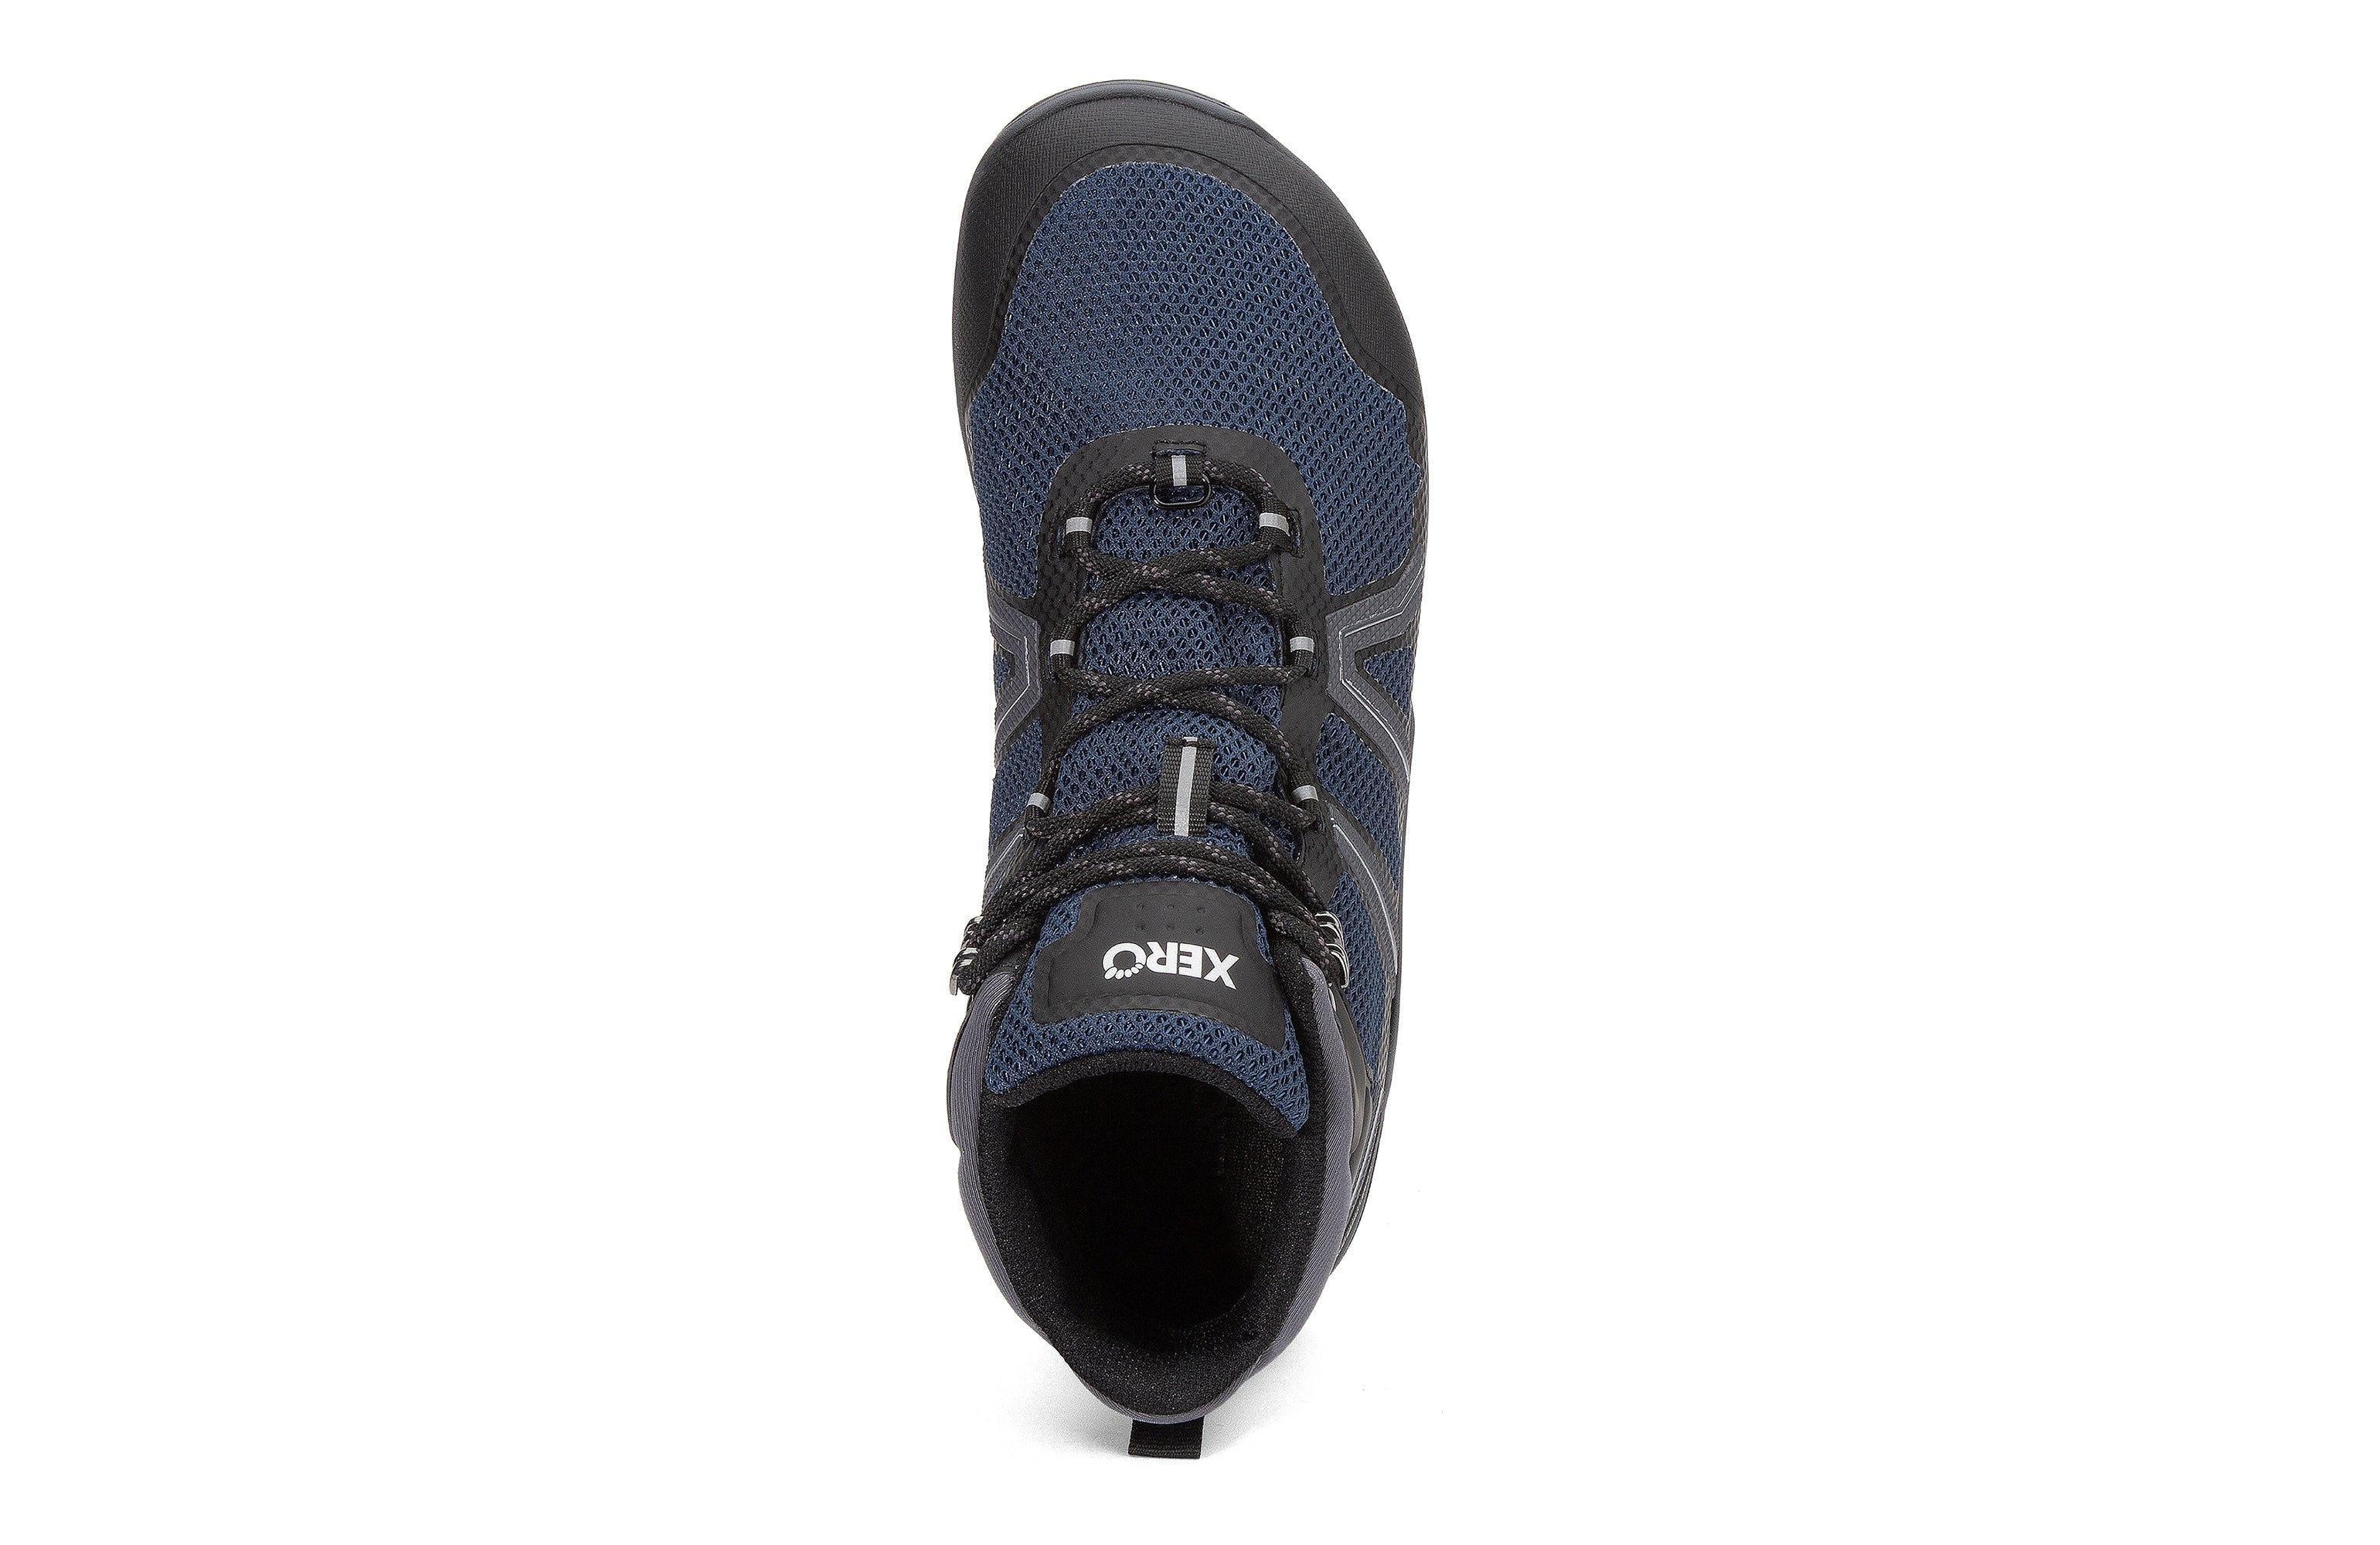 Xero Shoes Xcursion Fusion barfods støvler til mænd i farven moonlit blue / black, top